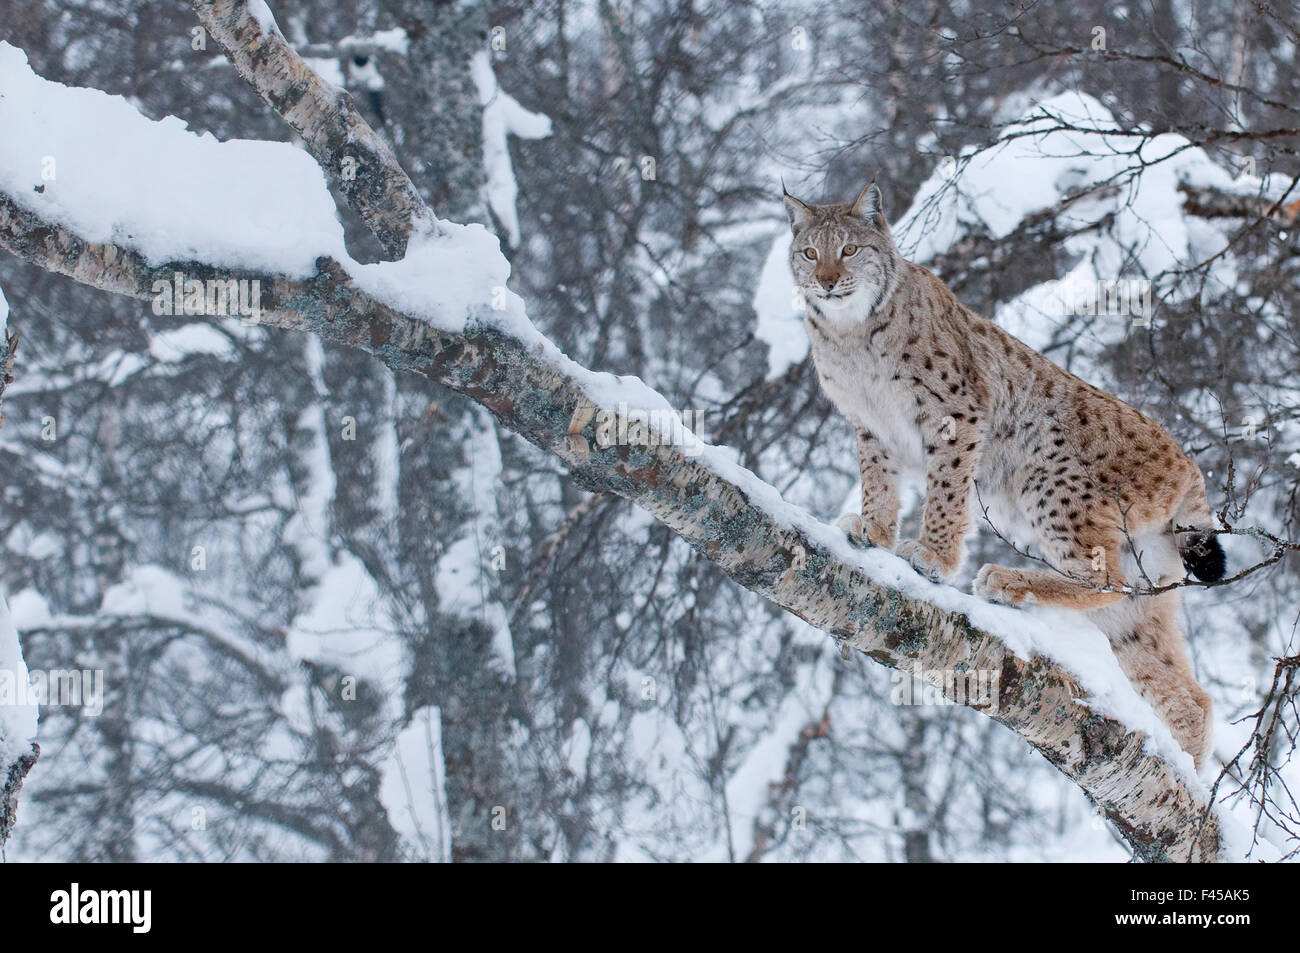 Lynx (Lynx lynx) escalade un arbre, captive, Norvège, février. Banque D'Images